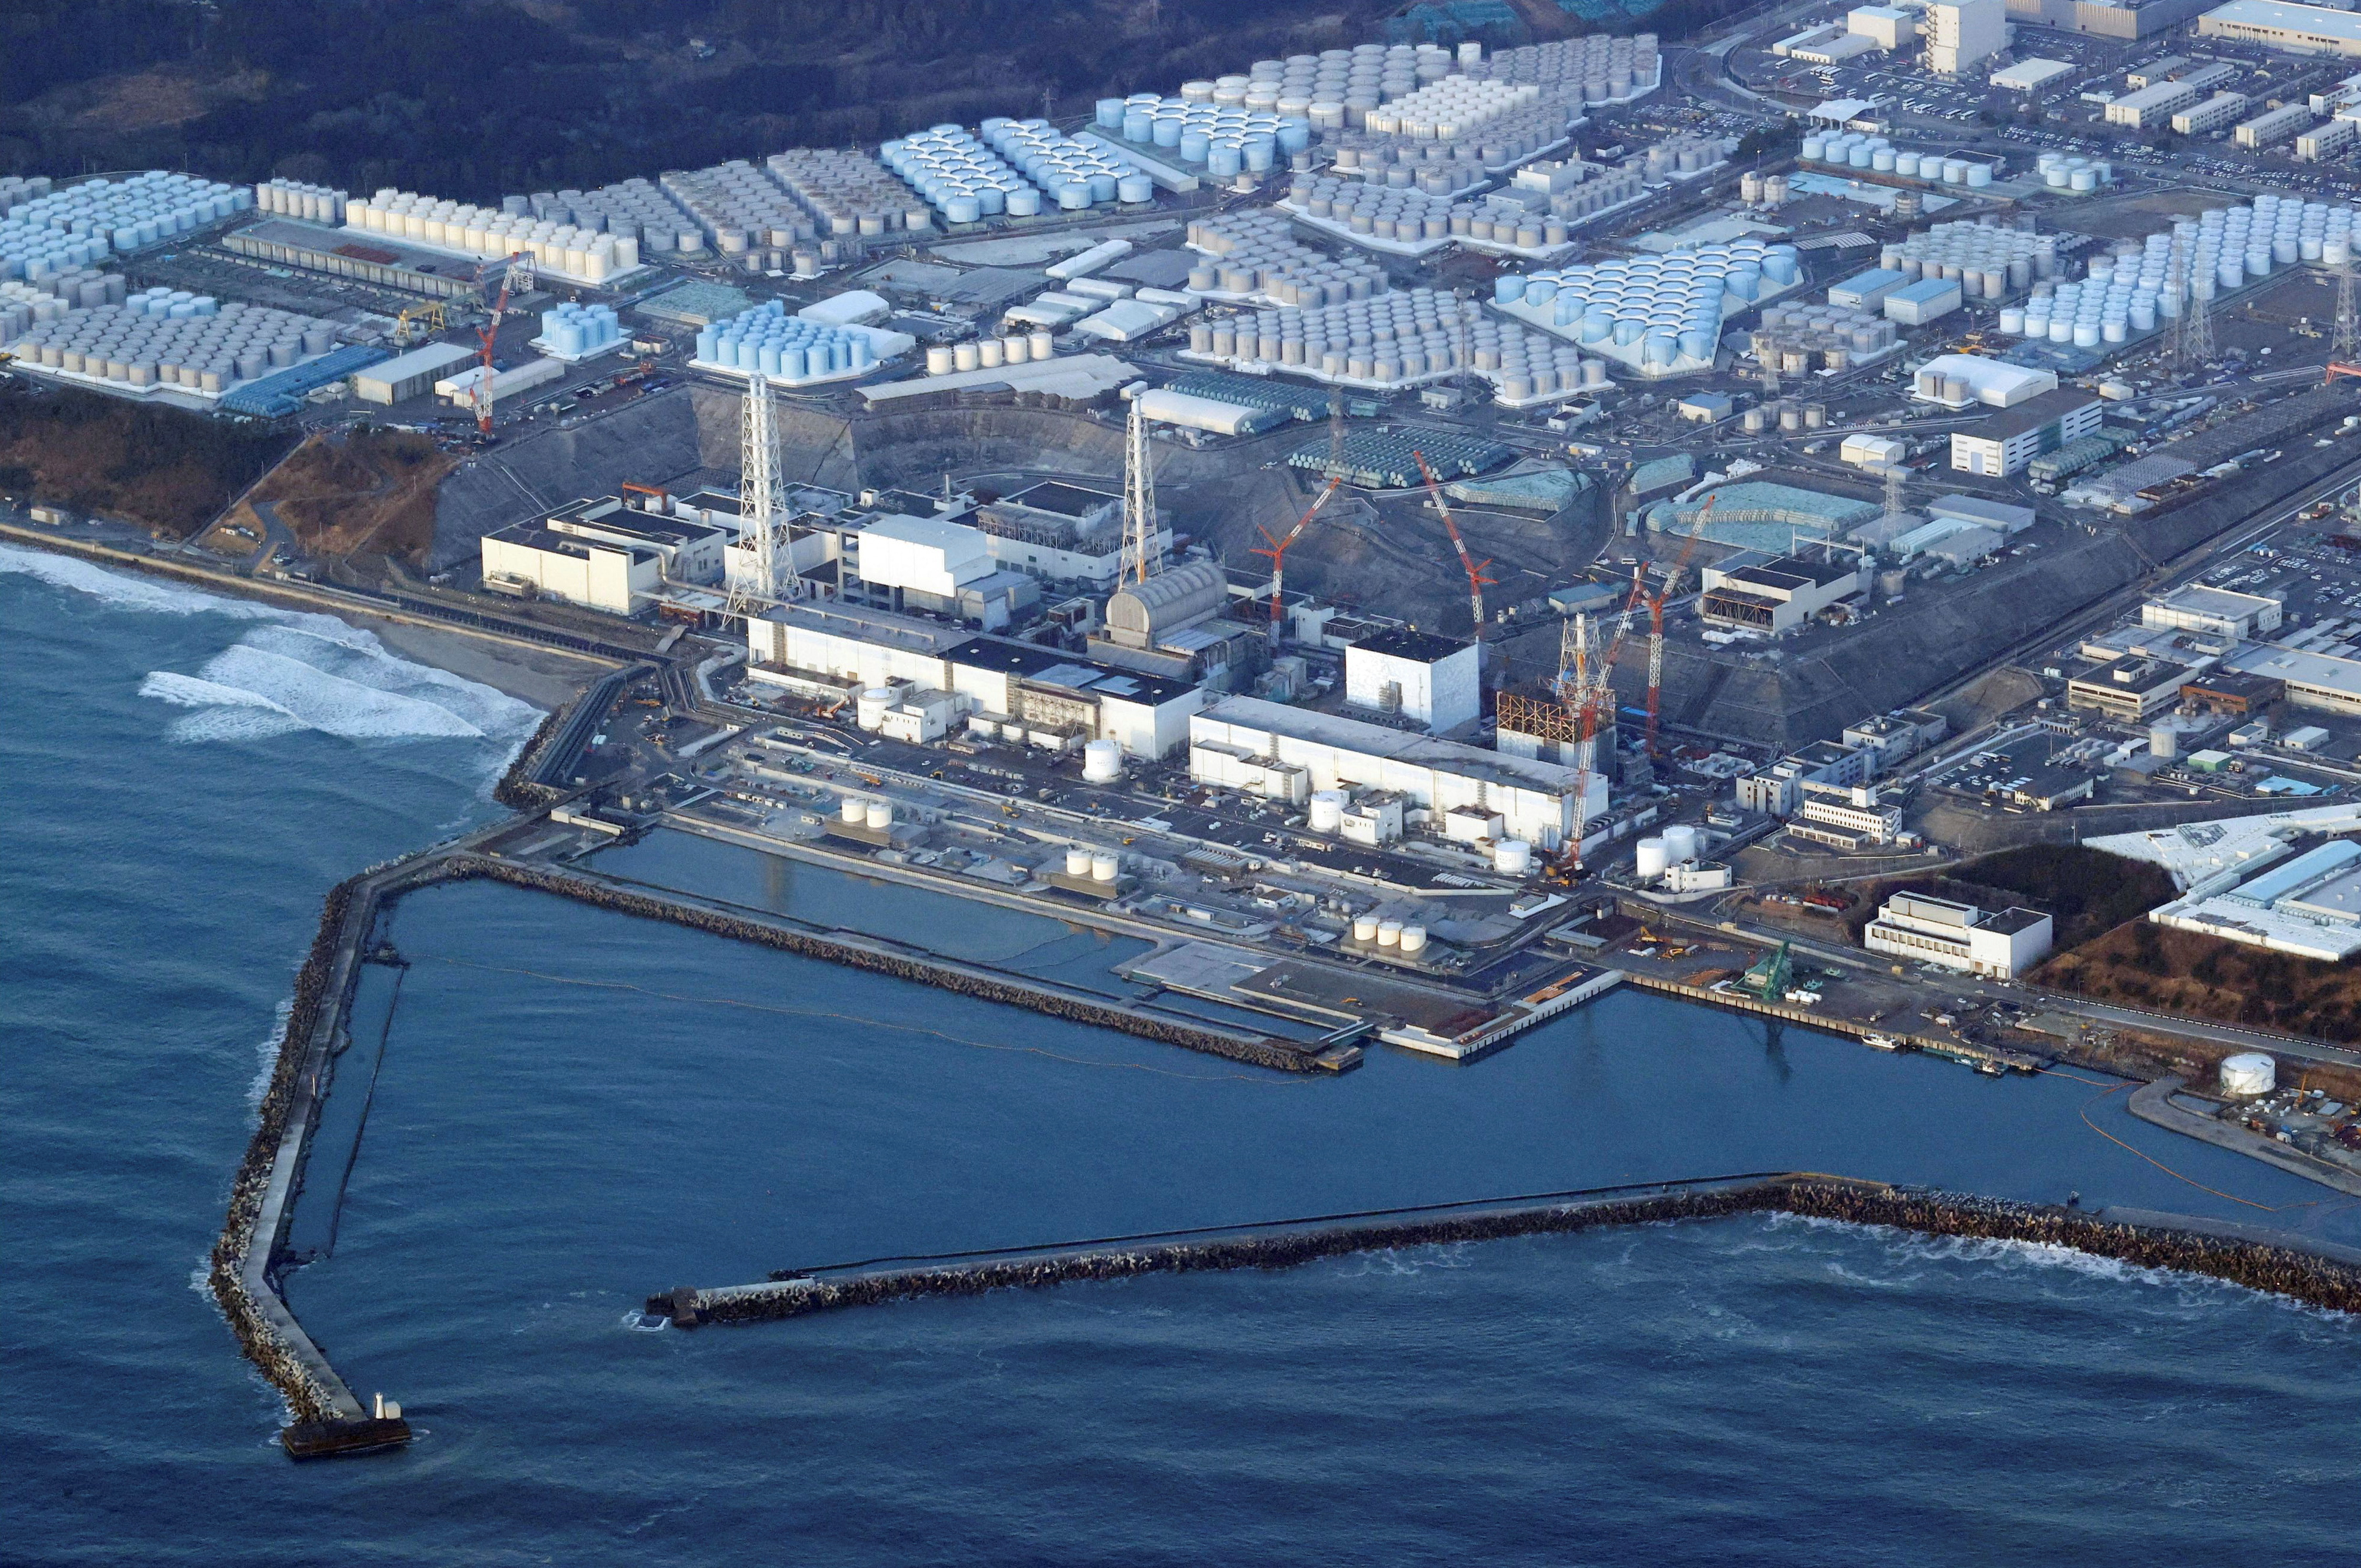 Rejet des eaux de Fukushima : le Japon convoque l'ambassadeur chinois après une vague de harcèlement